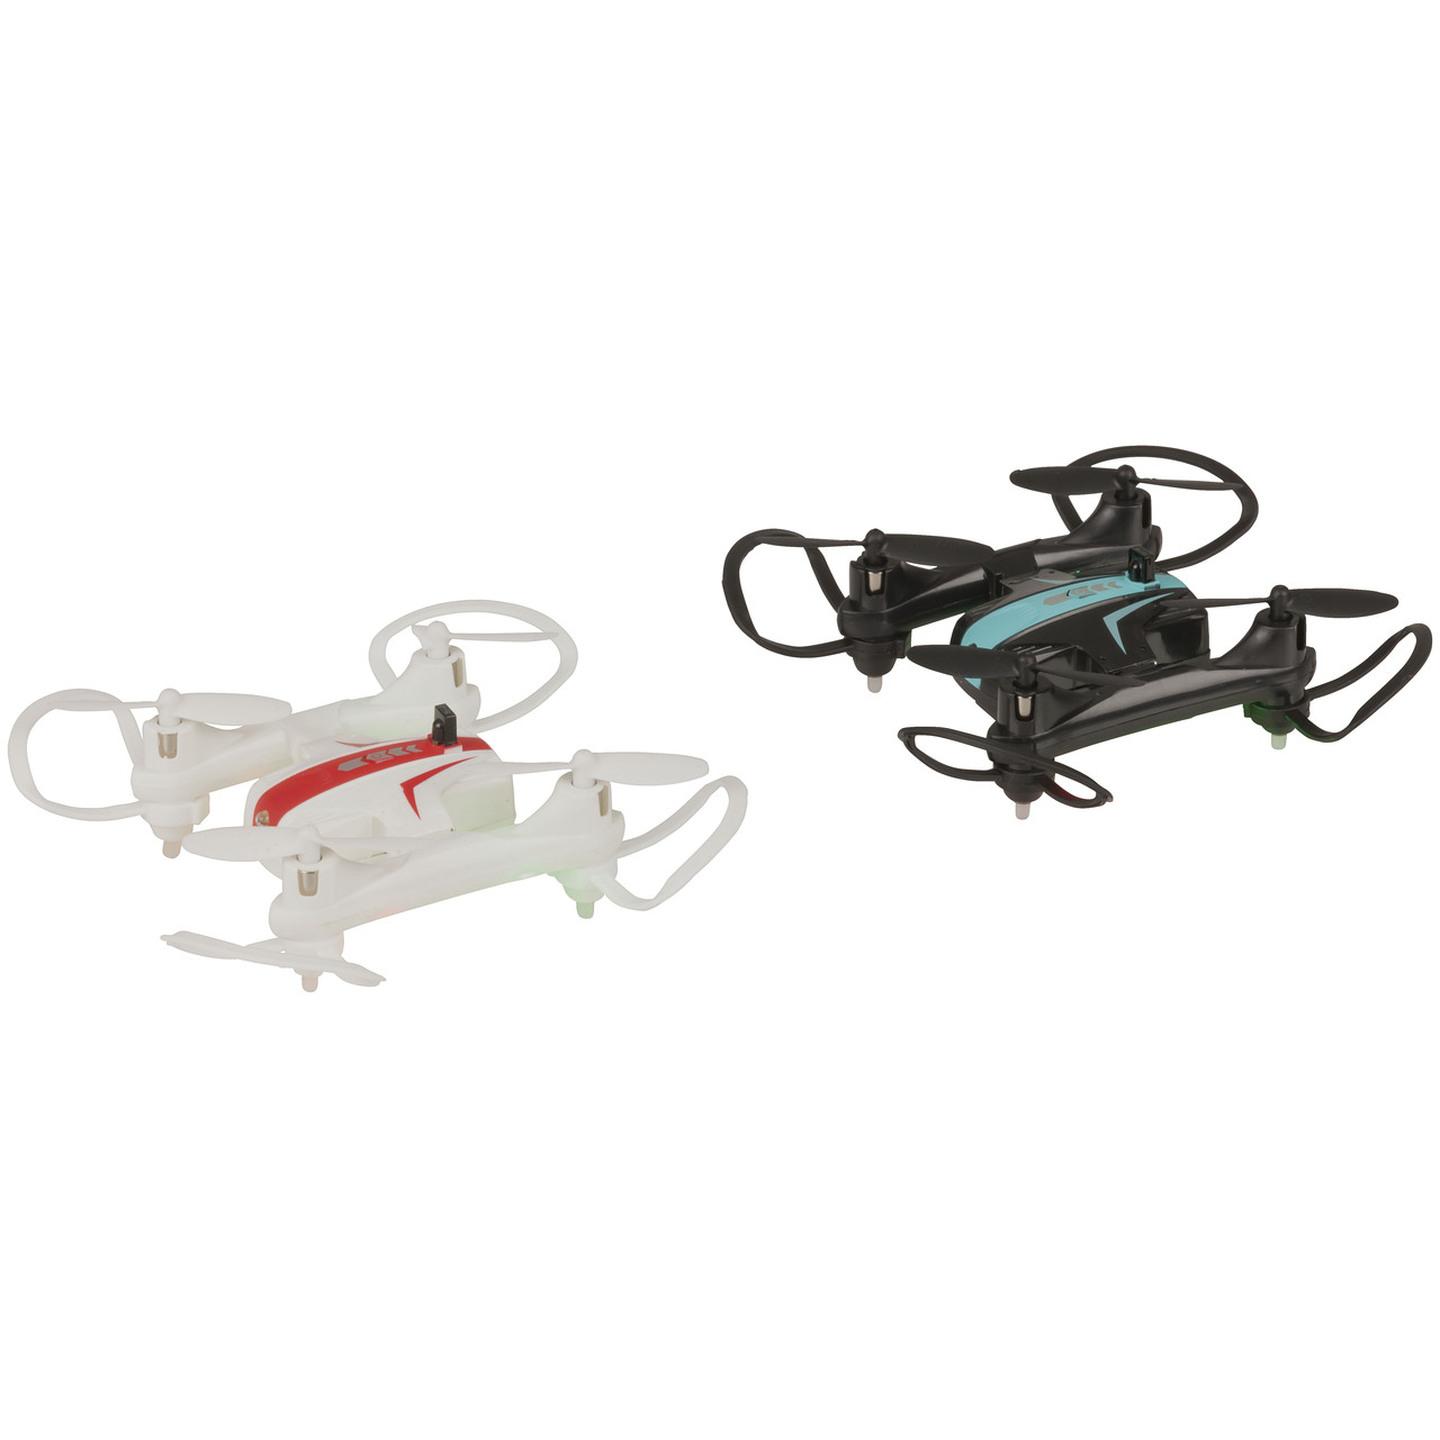 R/C Battle Drones - 2 Pack